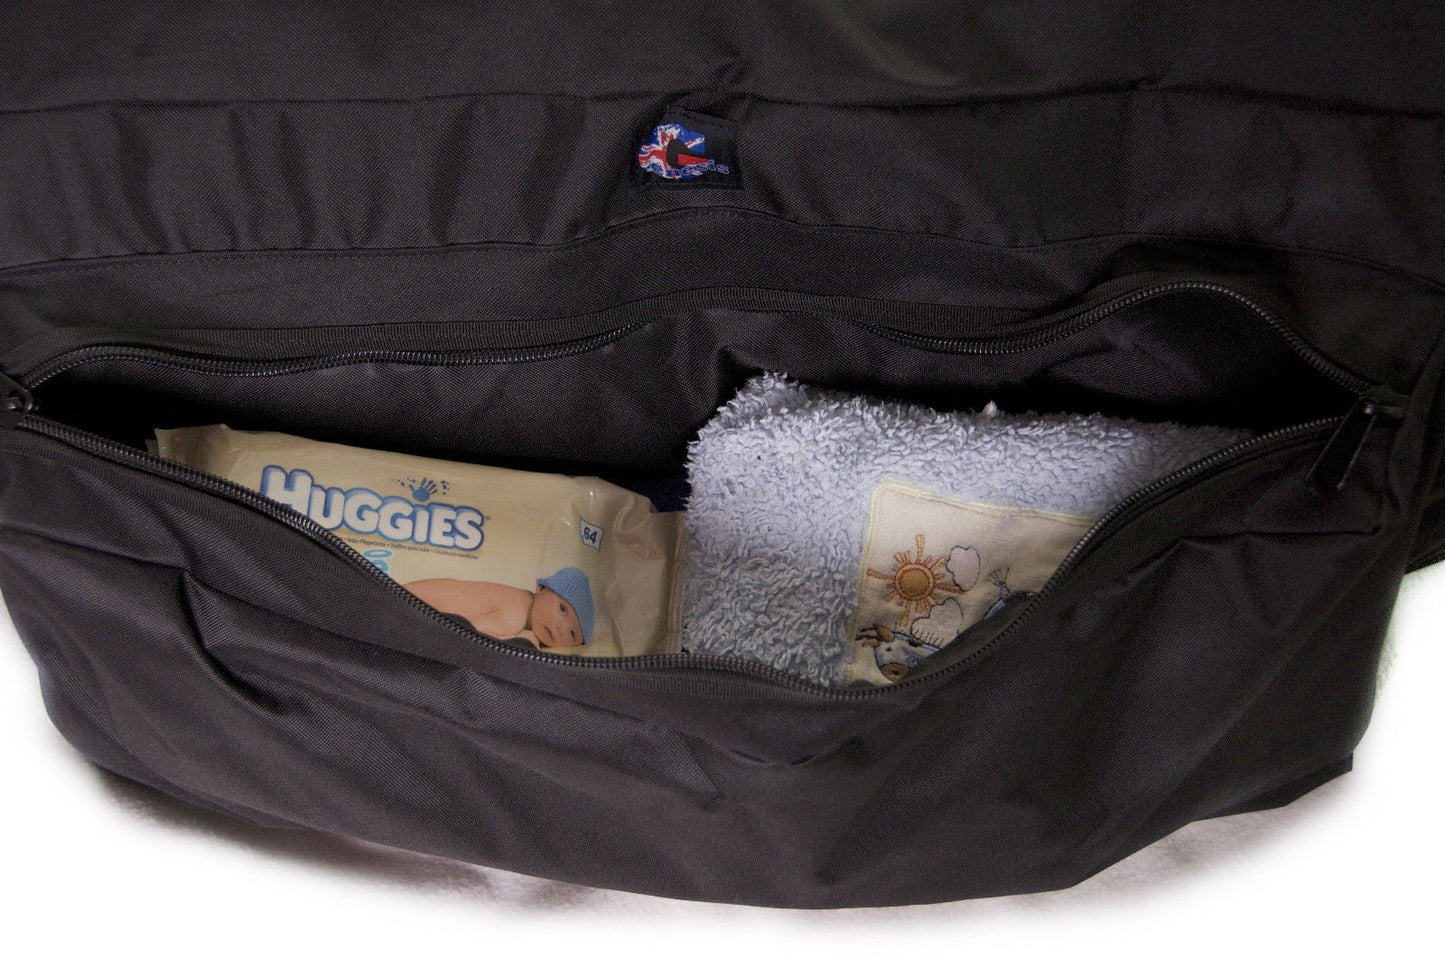 Genesis Travel Bag compatible with Venicci Tinum